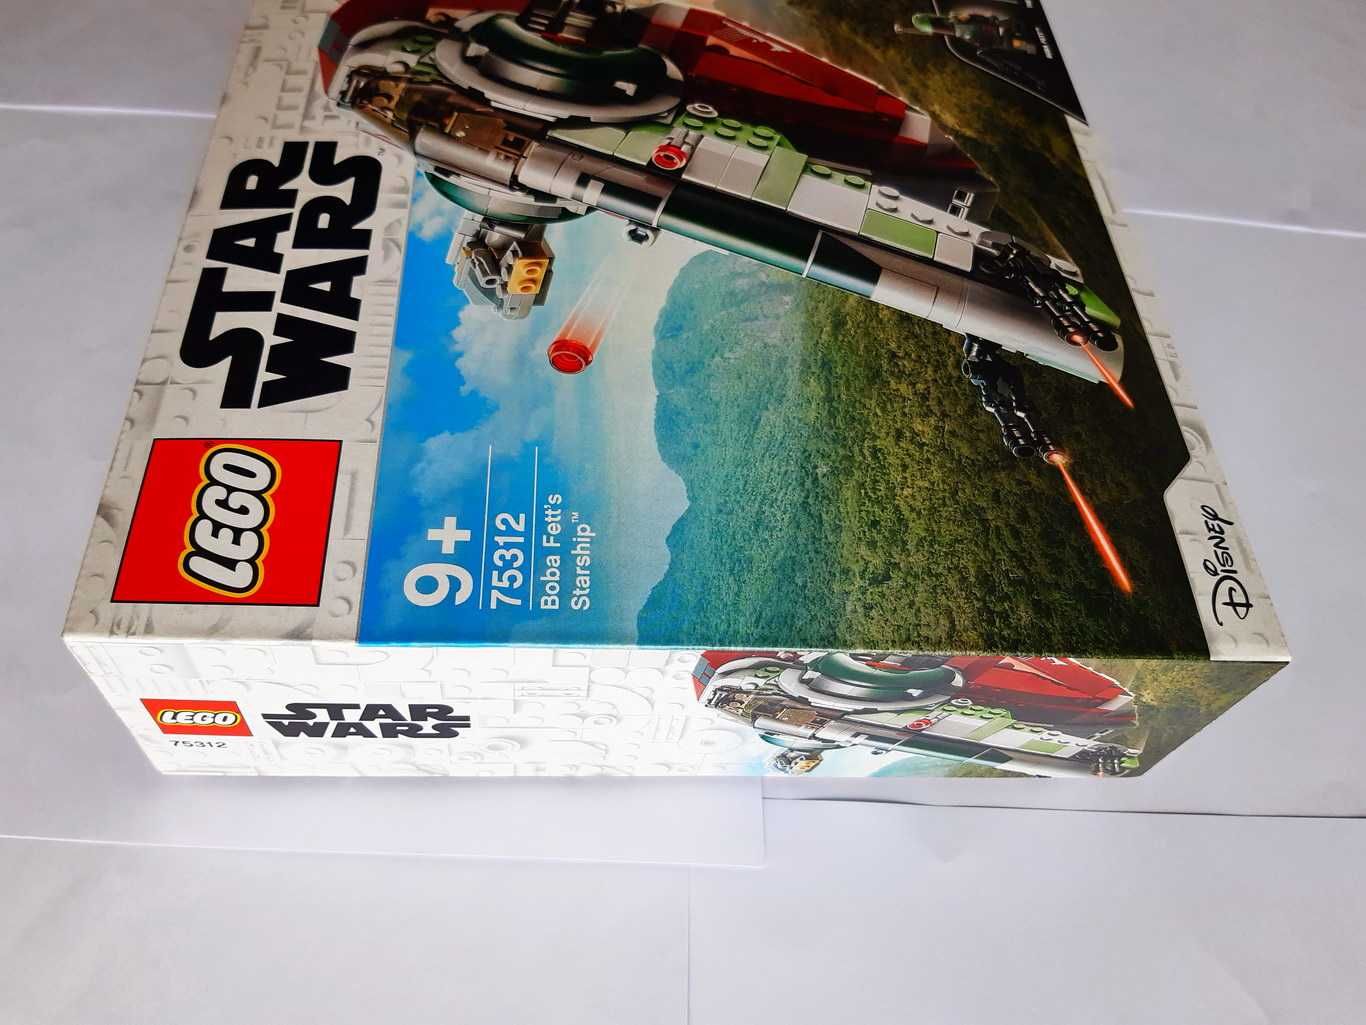 Lego Star Wars 75312 Boba Fett’s Starship (Slave I) selado